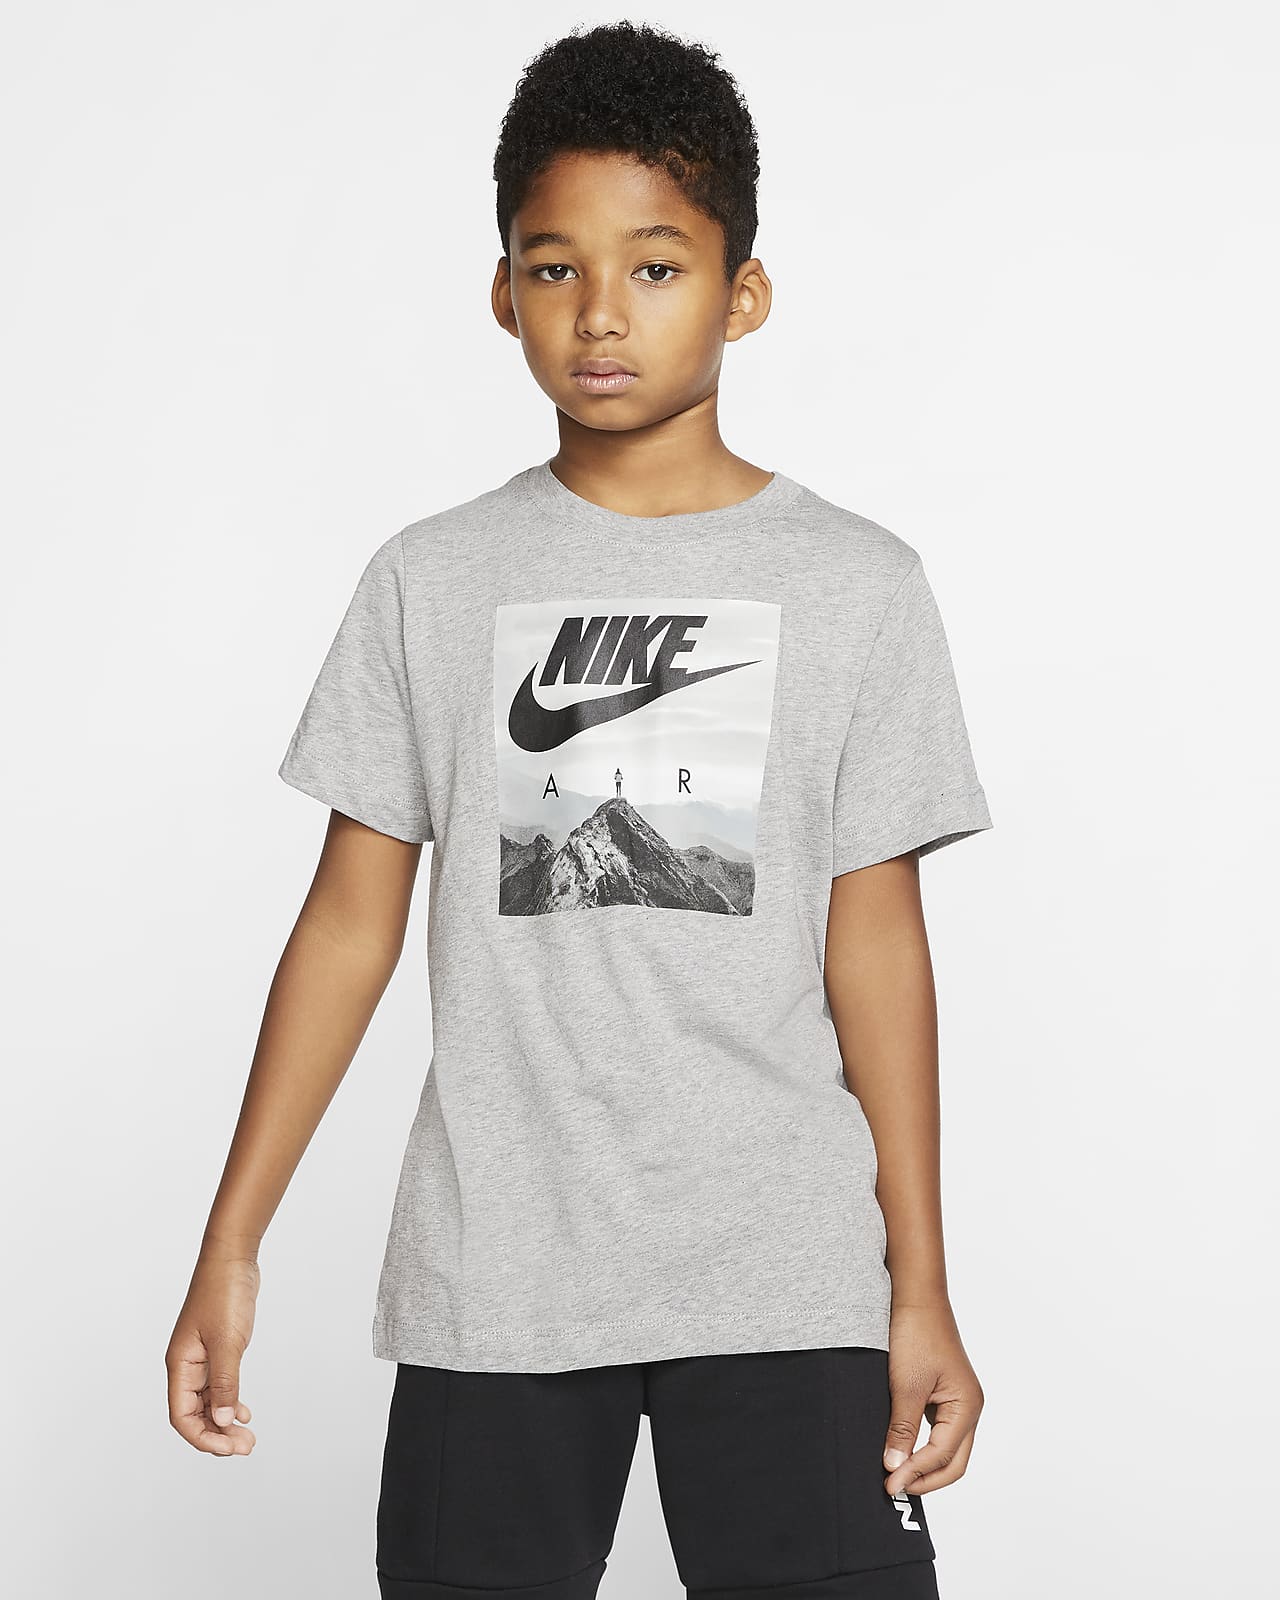 Tee-shirt Nike Air pour Garçon plus âgé